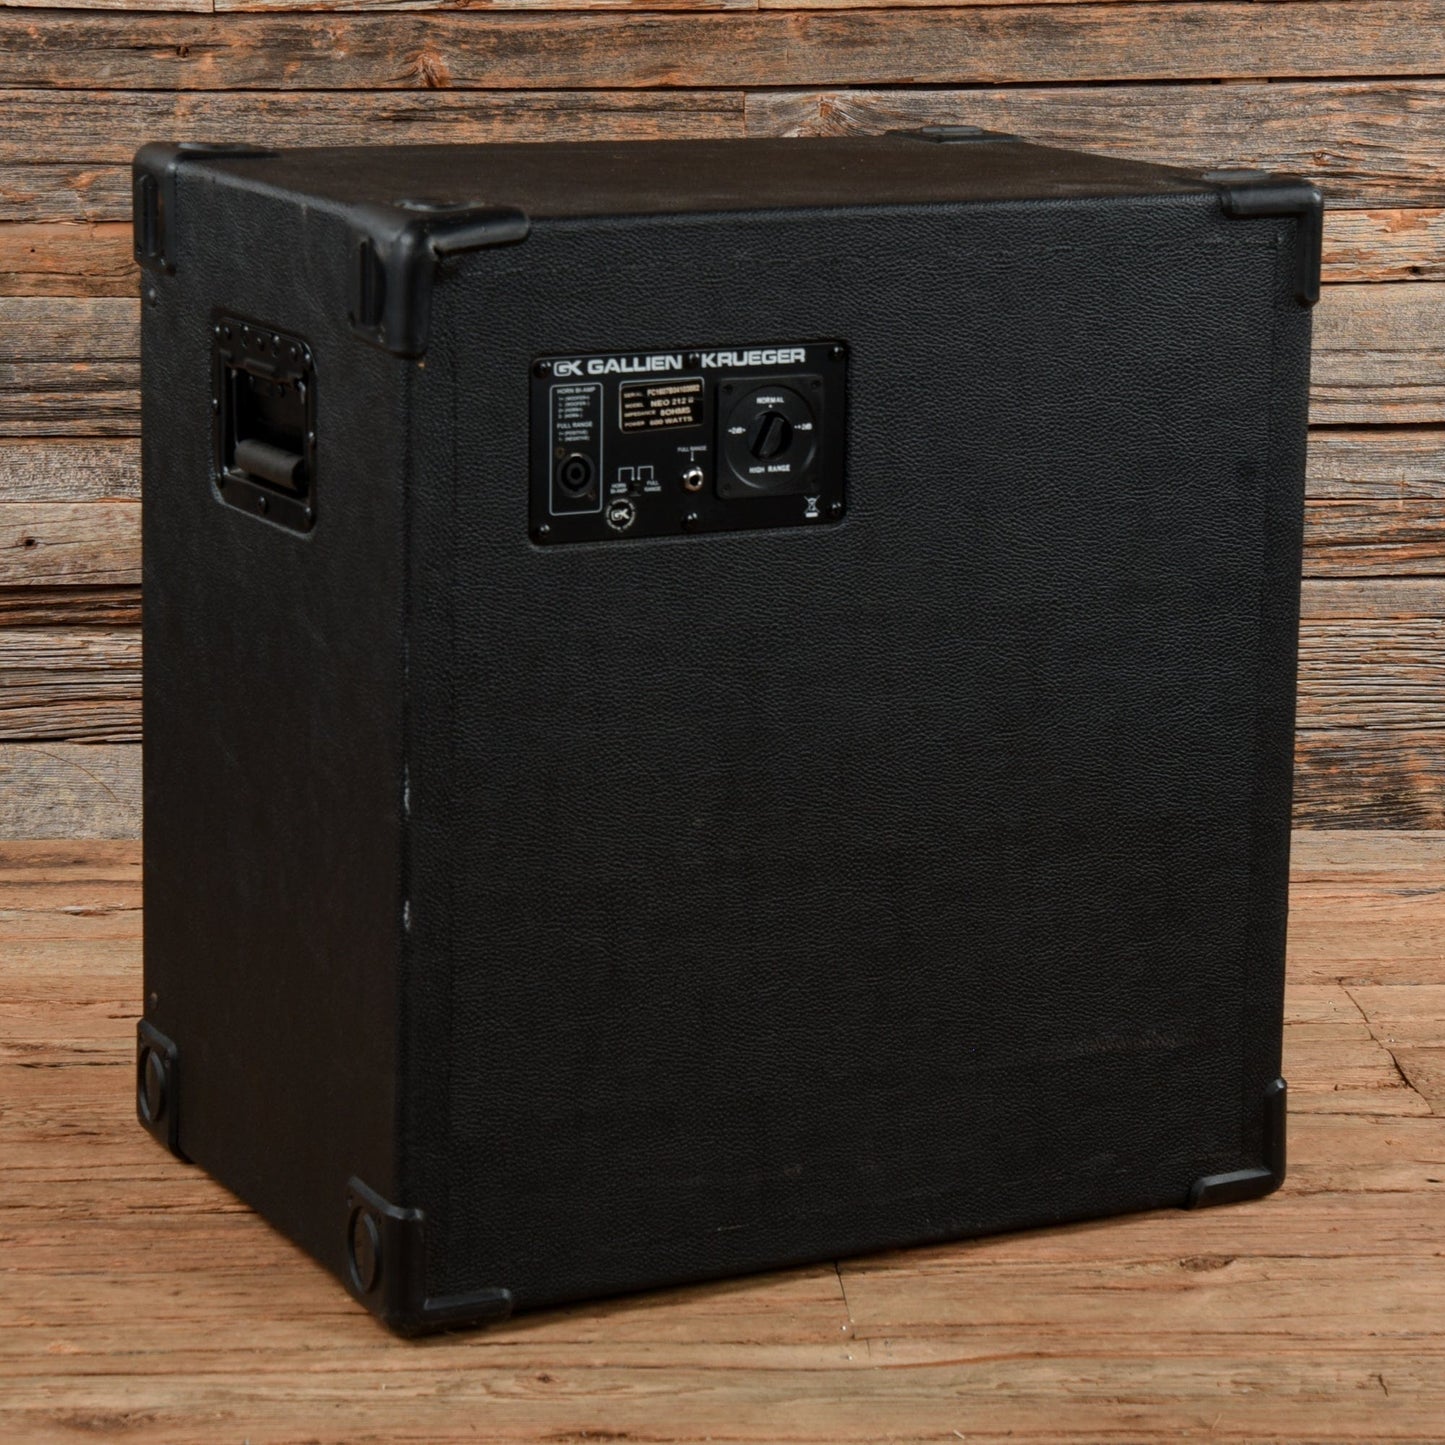 Gallien-Krueger Neo 212II 600-Watt 2x12" Bass Cab Amps / Bass Cabinets